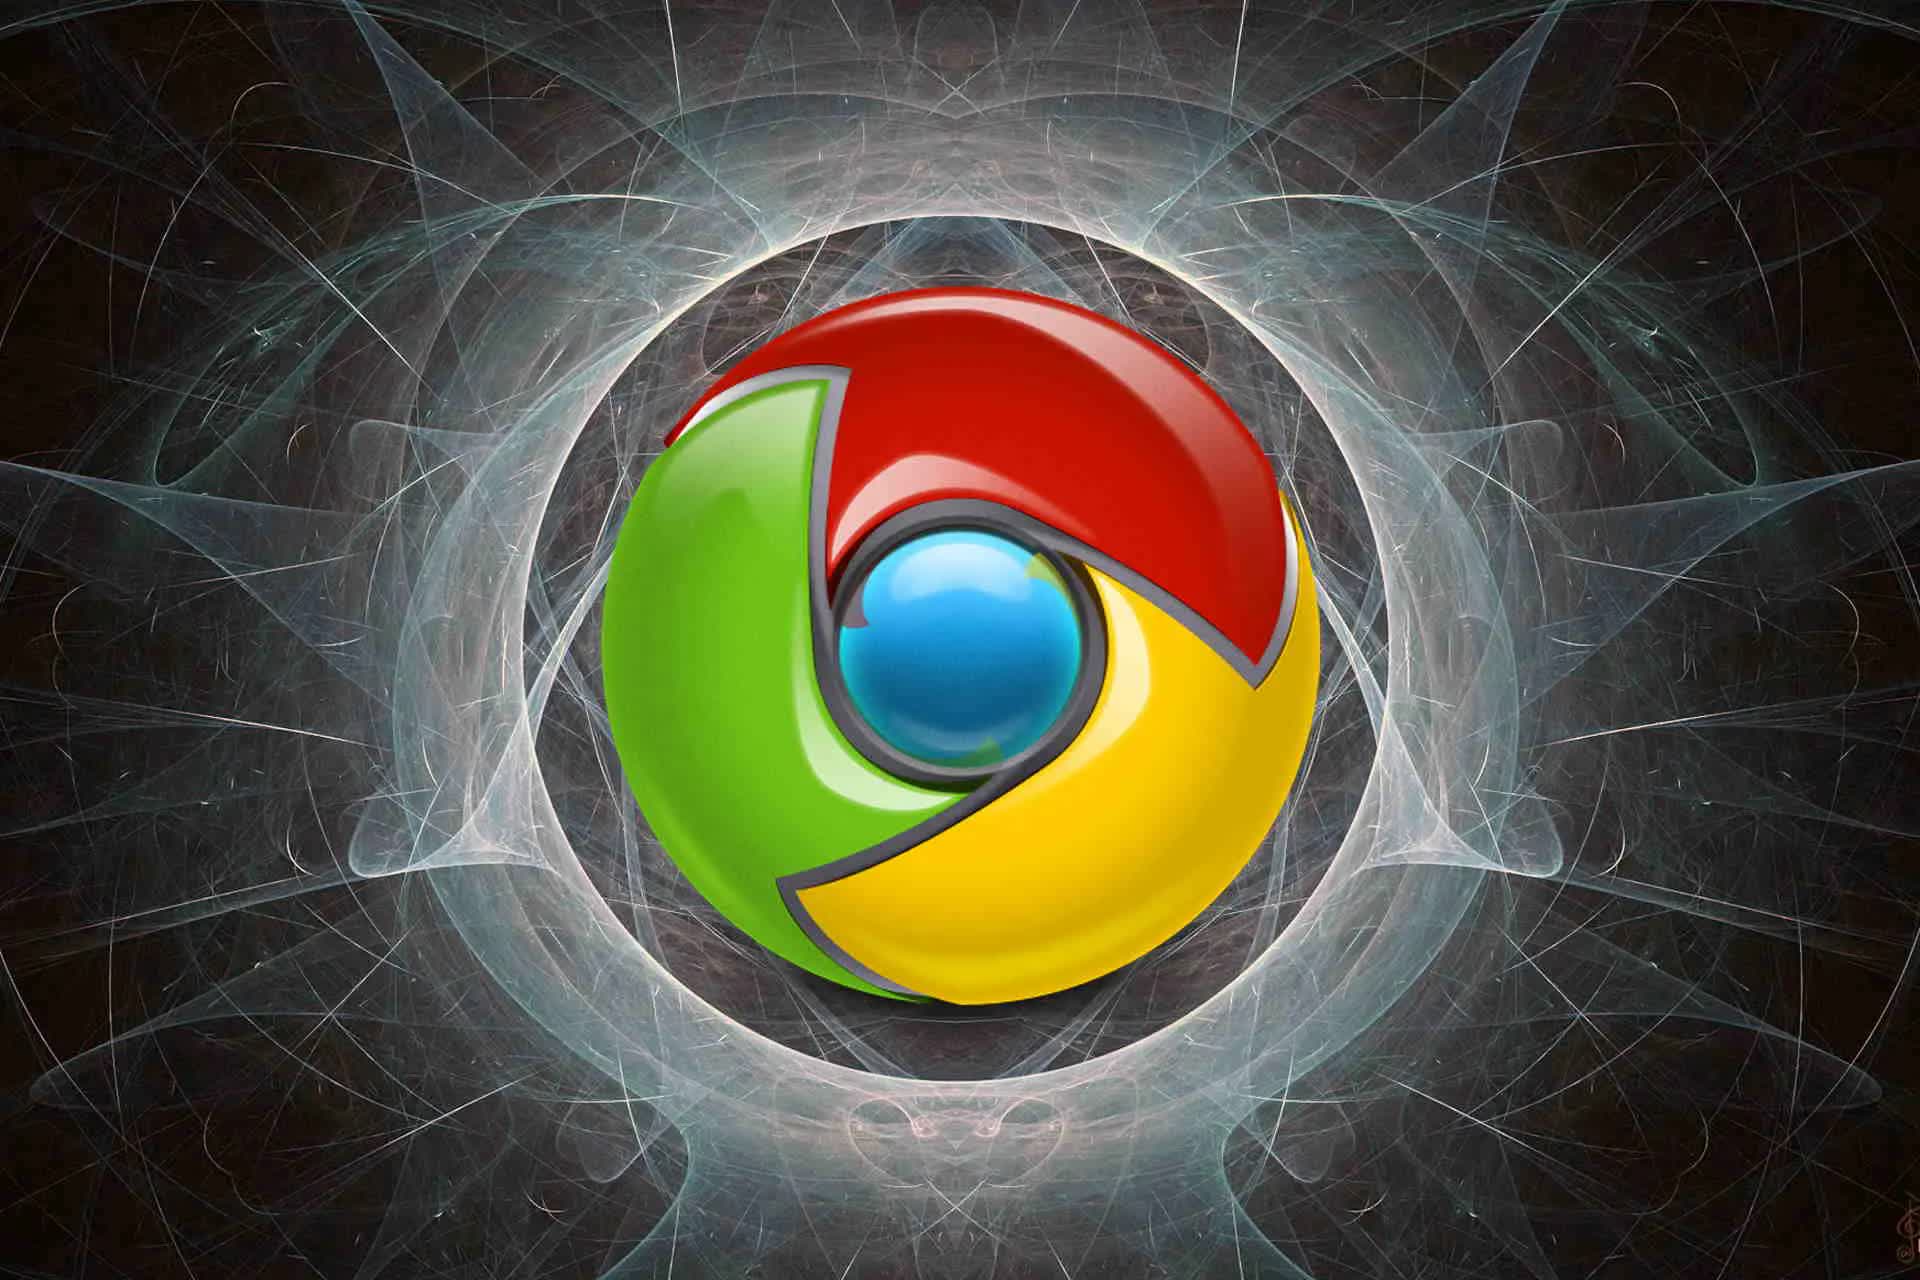 Chuyên gia của Kaspersky: Hãy ngừng dùng Chrome, chúng tôi vừa phát hiện ra 1 chuyện 'đáng sợ' mà Google đang làm - Ảnh 1.